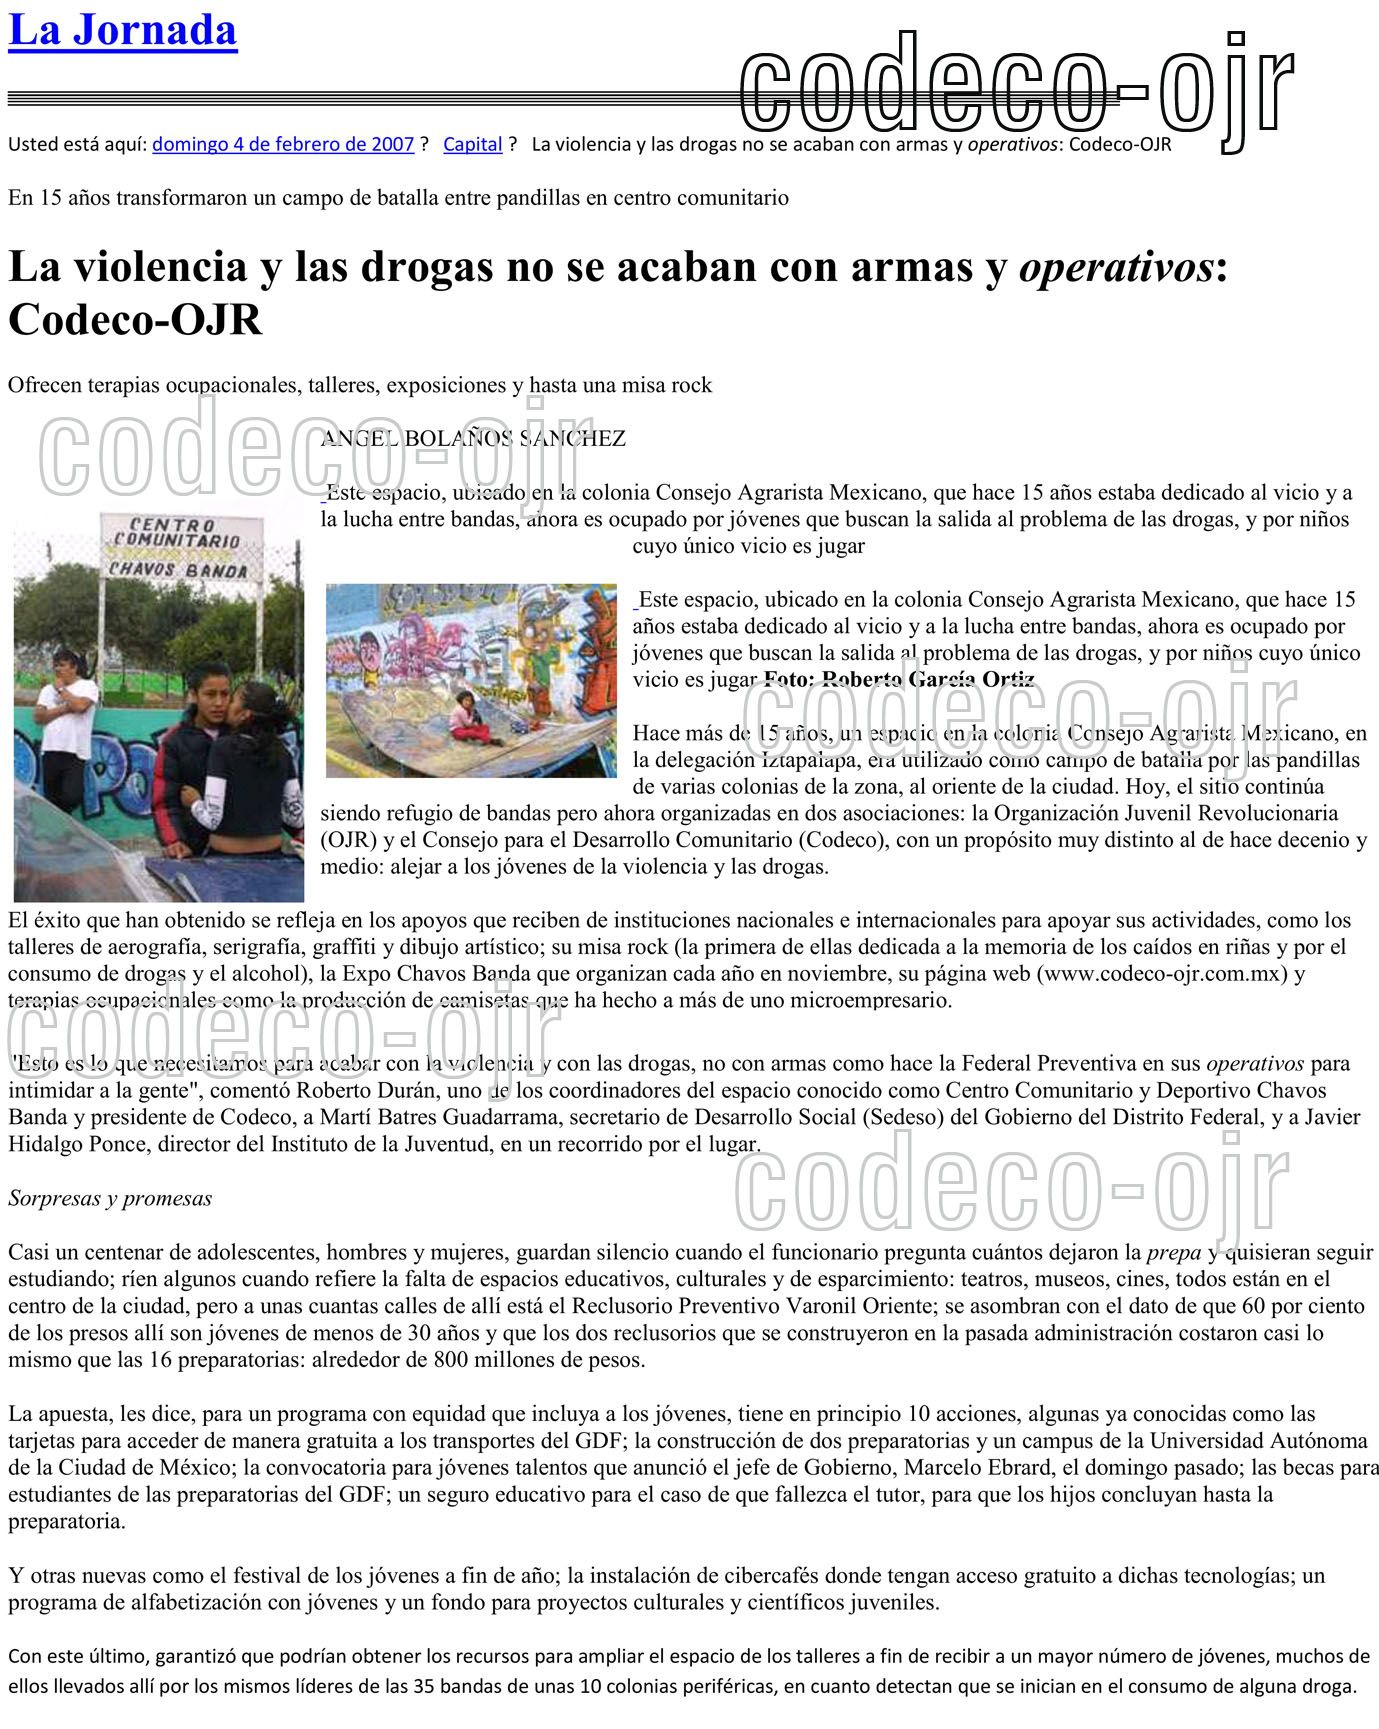 Archivo: VIOLENVIA Y DROGAS NO SE ACABAN CON ARMAS 2007.jpg